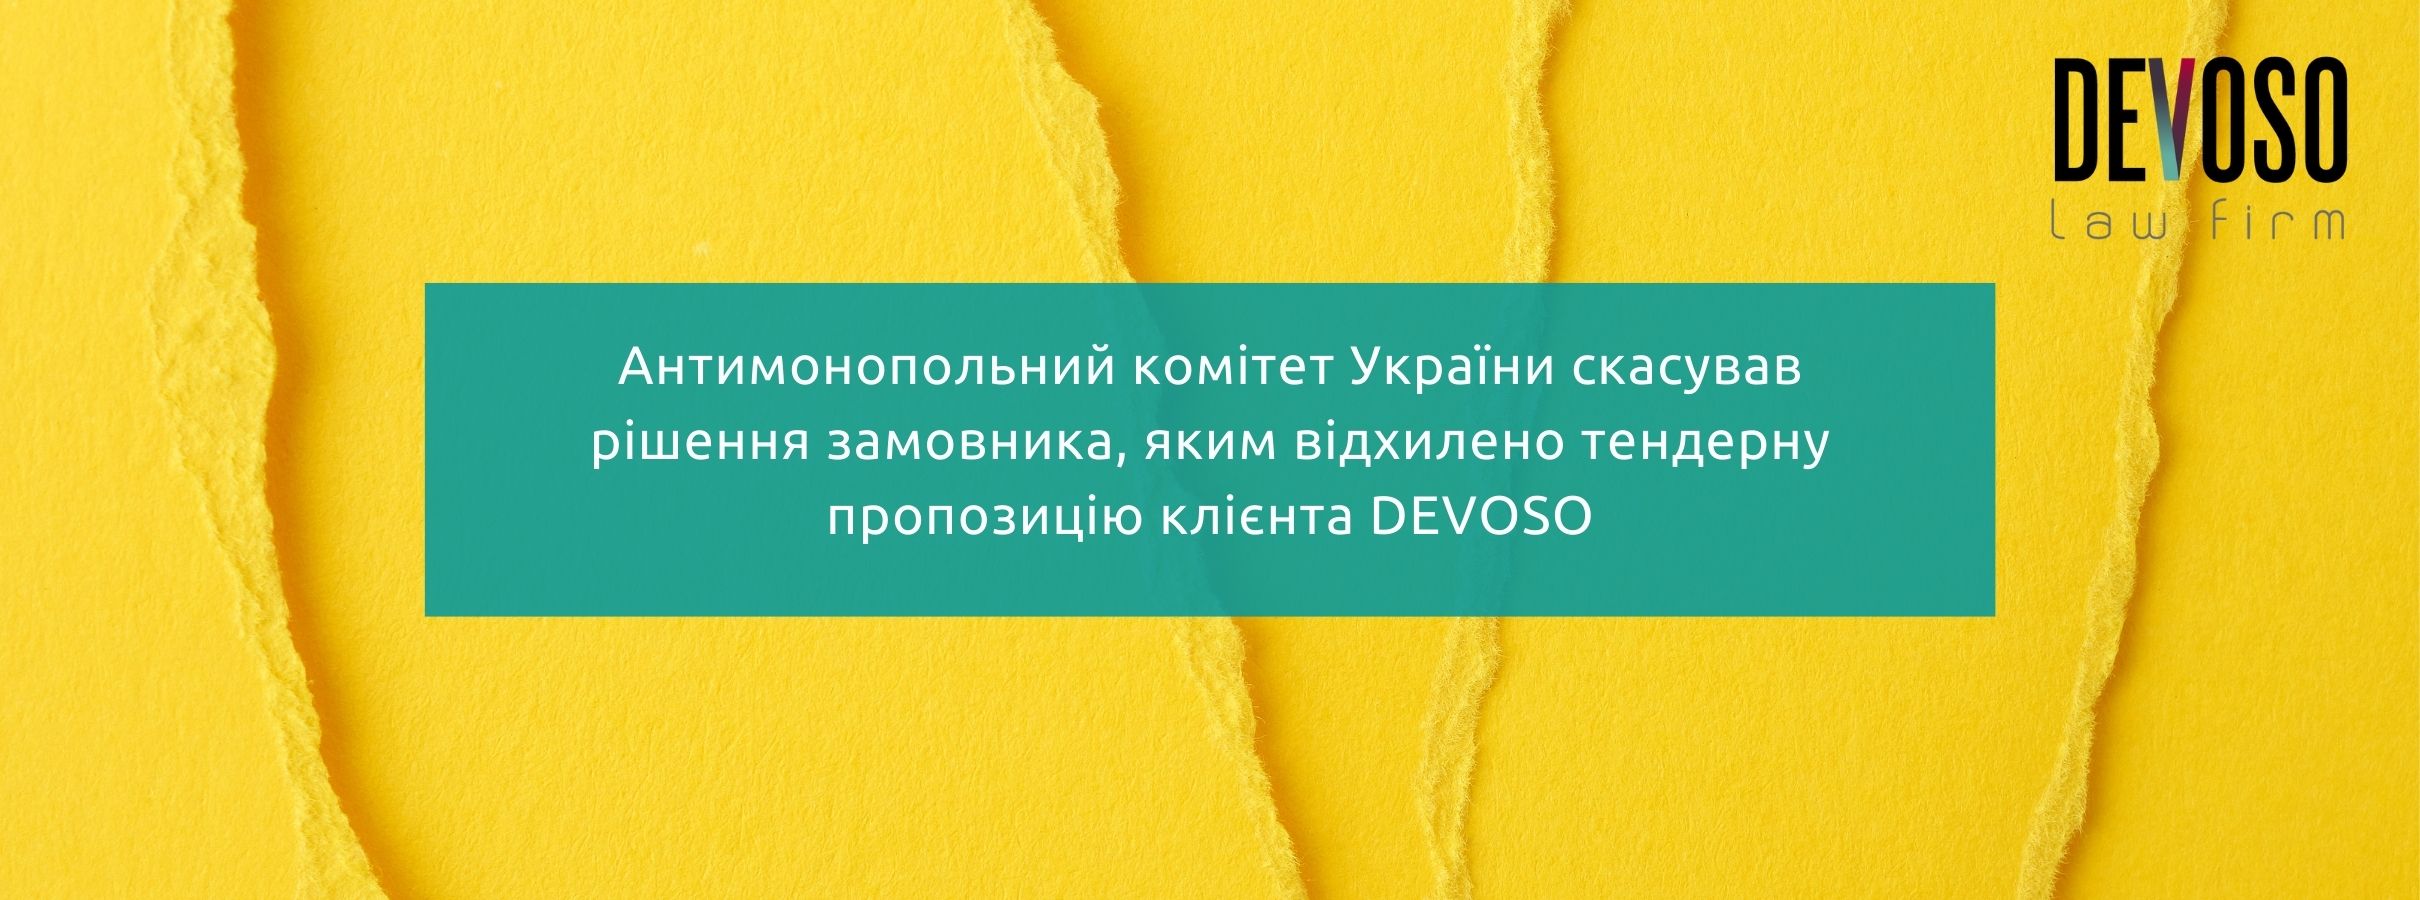 Антимонопольний комітет України скасував рішення замовника, яким відхилено тендерну пропозицію клієнта DEVOSO